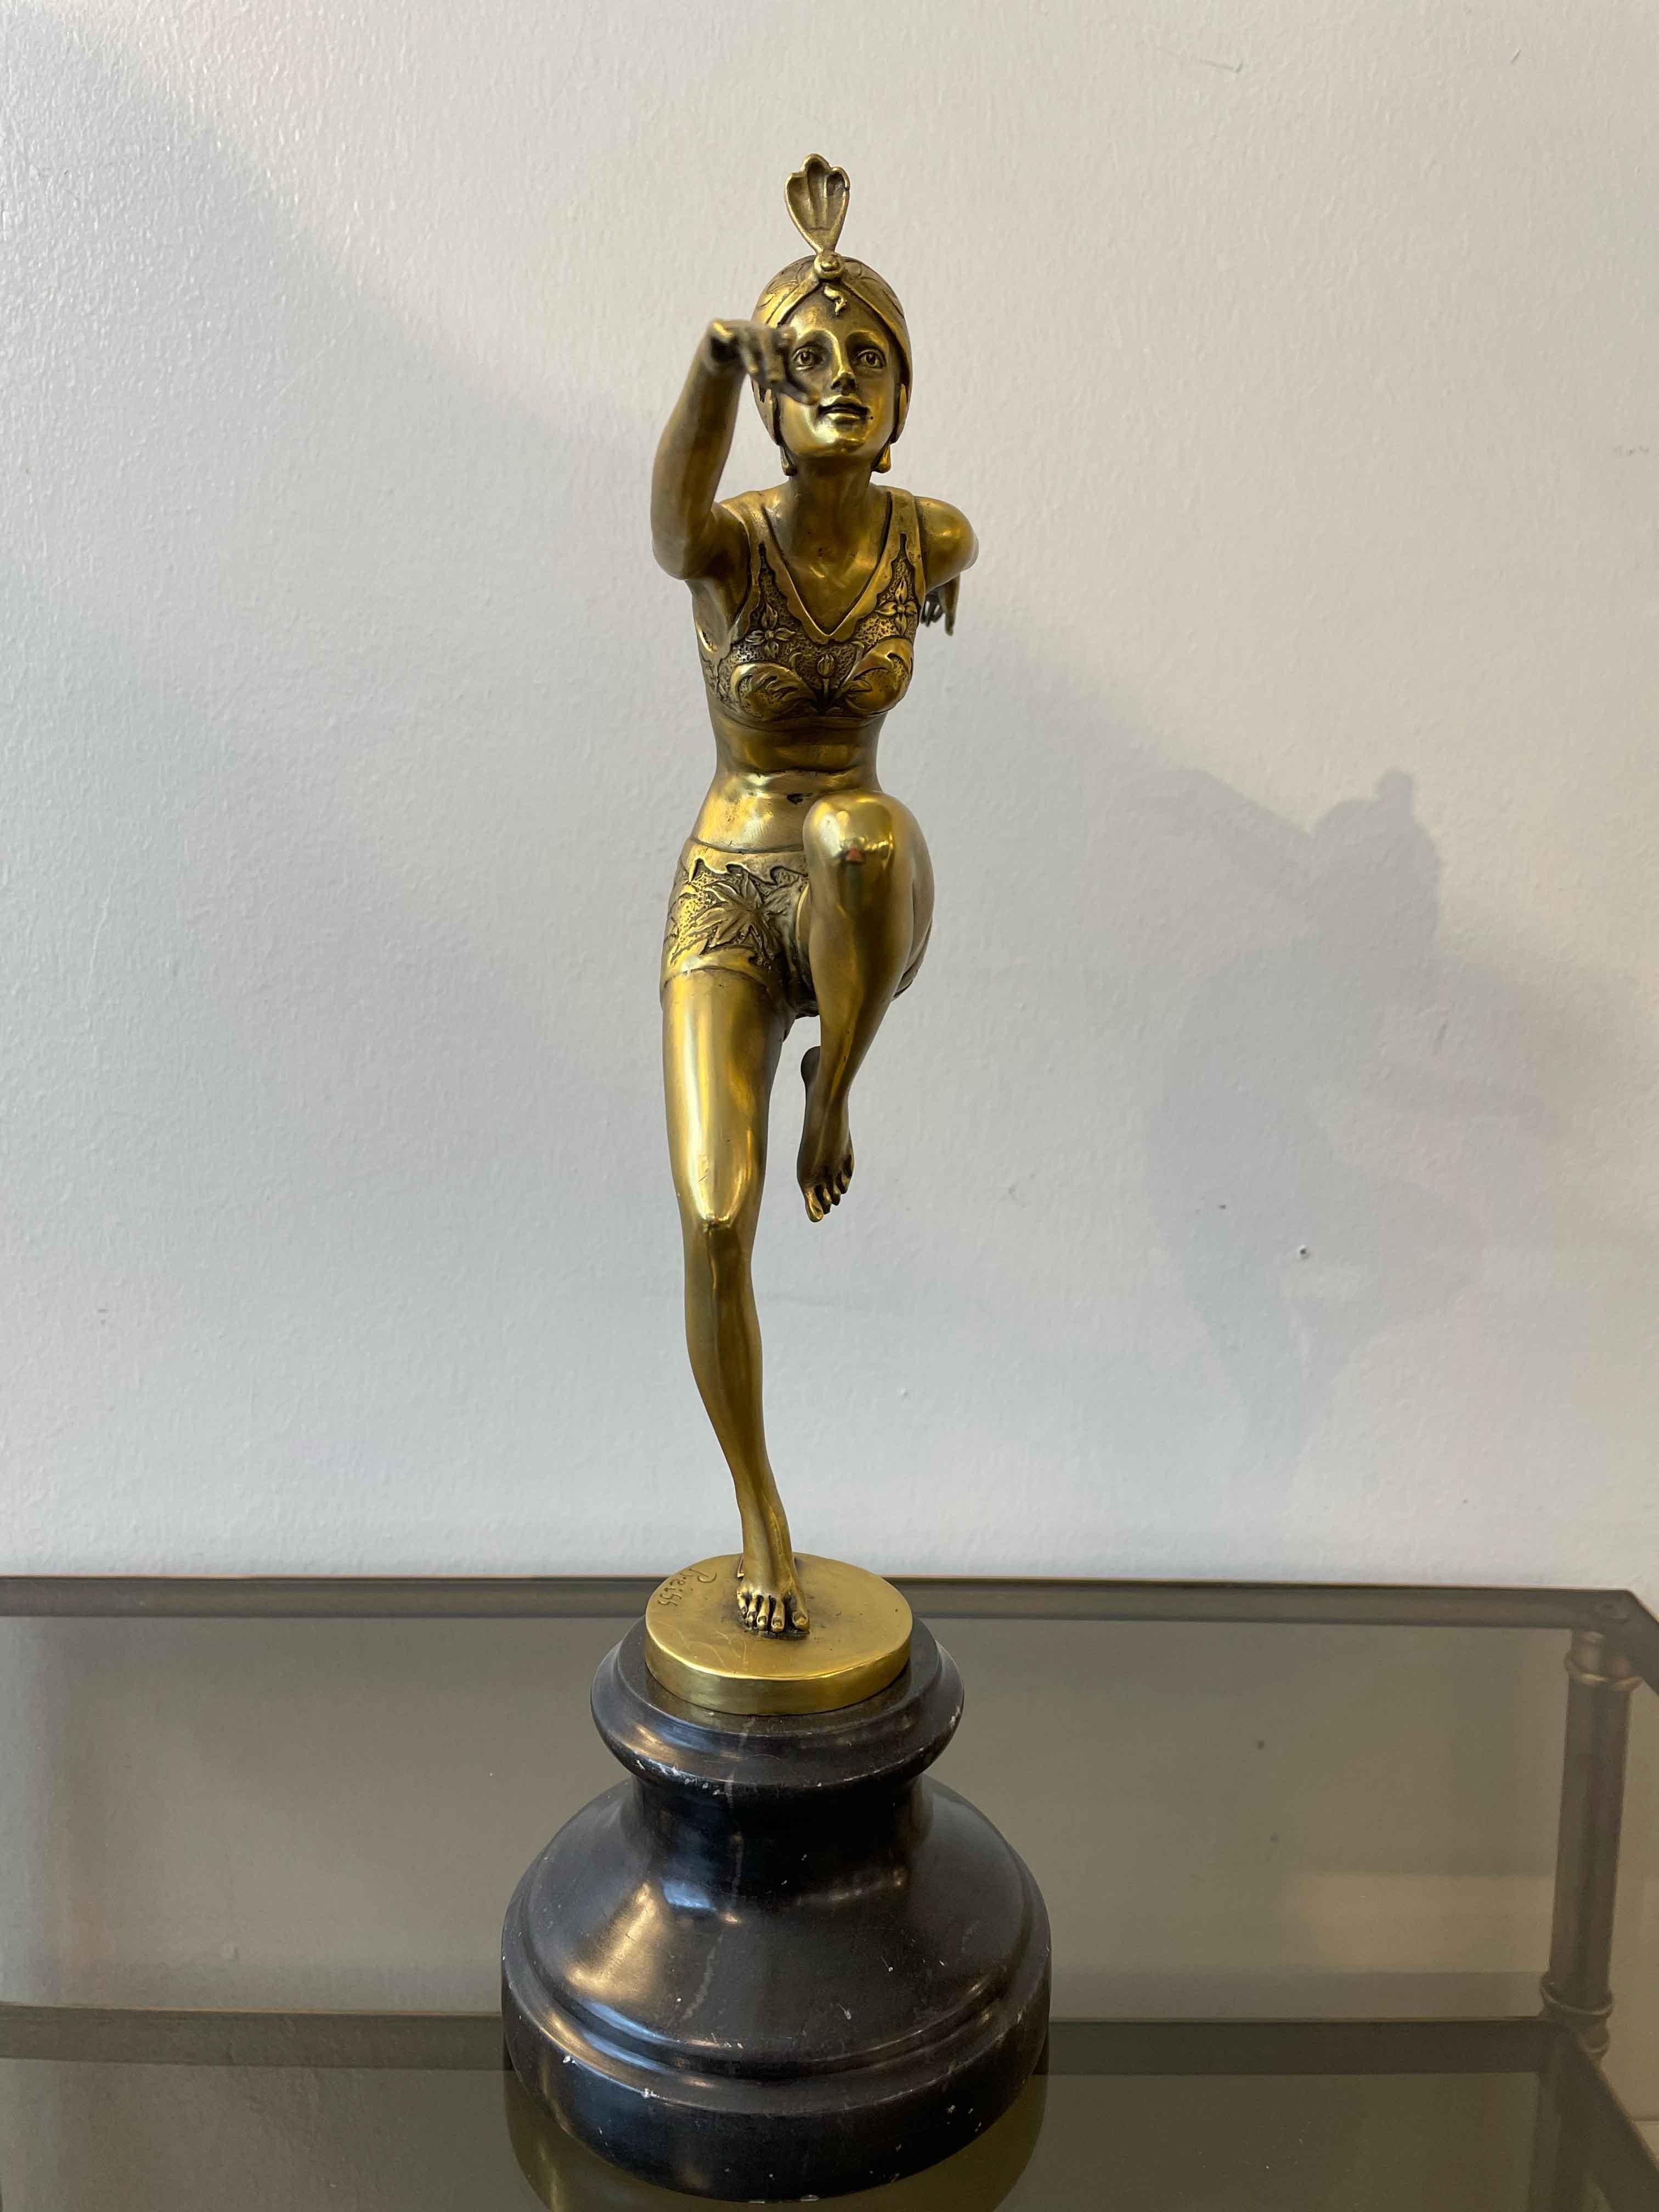 Art-Deco-Skulptur einer Ballerina aus vergoldeter Bronze von Preiss.

Die Skulptur weist zahlreiche Details auf, die über die gesamte Figur verteilt sind.

Abmessungen: H 38 cm - Sockeldurchm. 12 cm